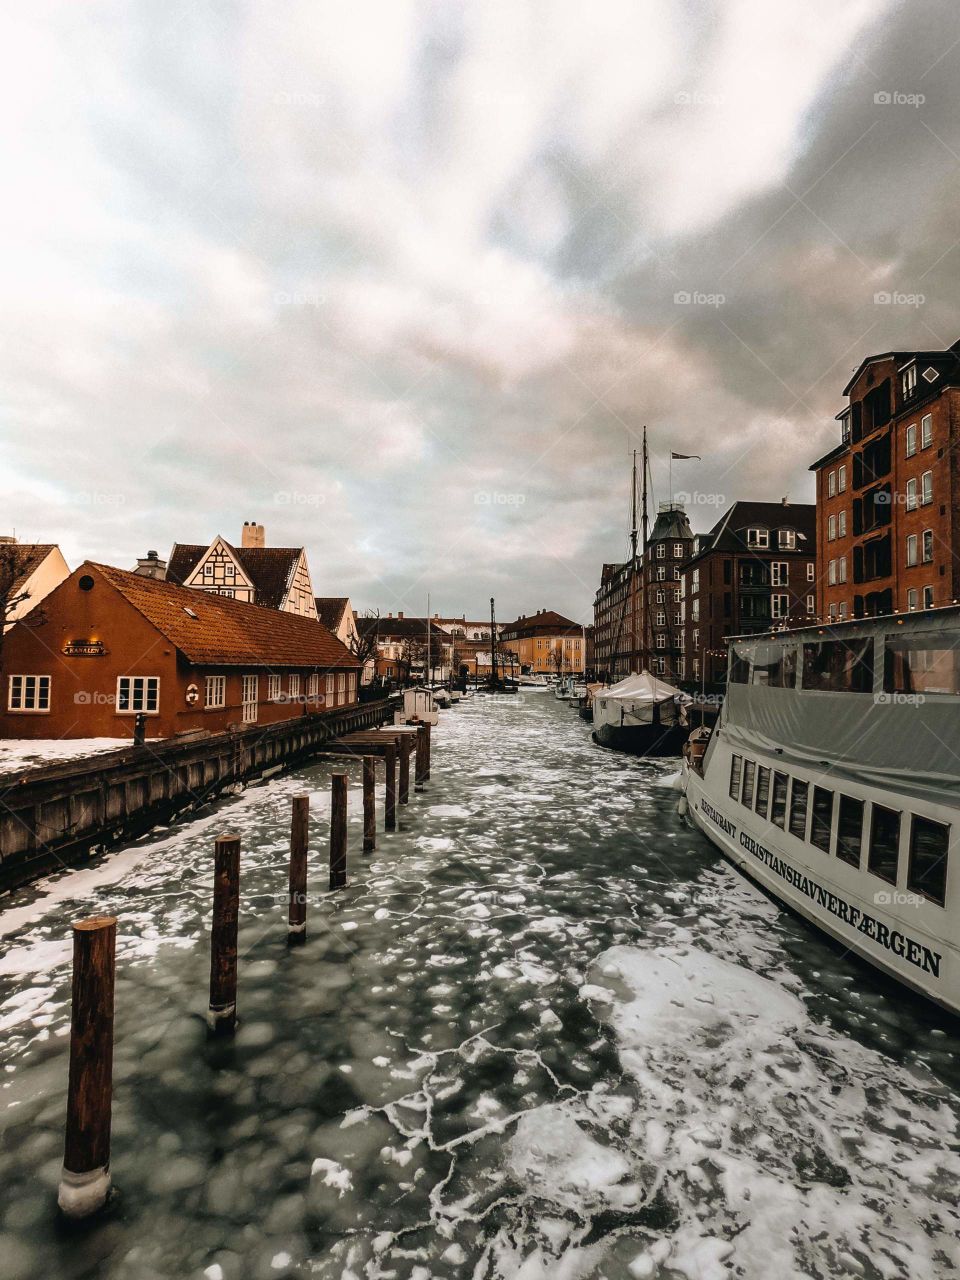 Frozen in Christianshavn